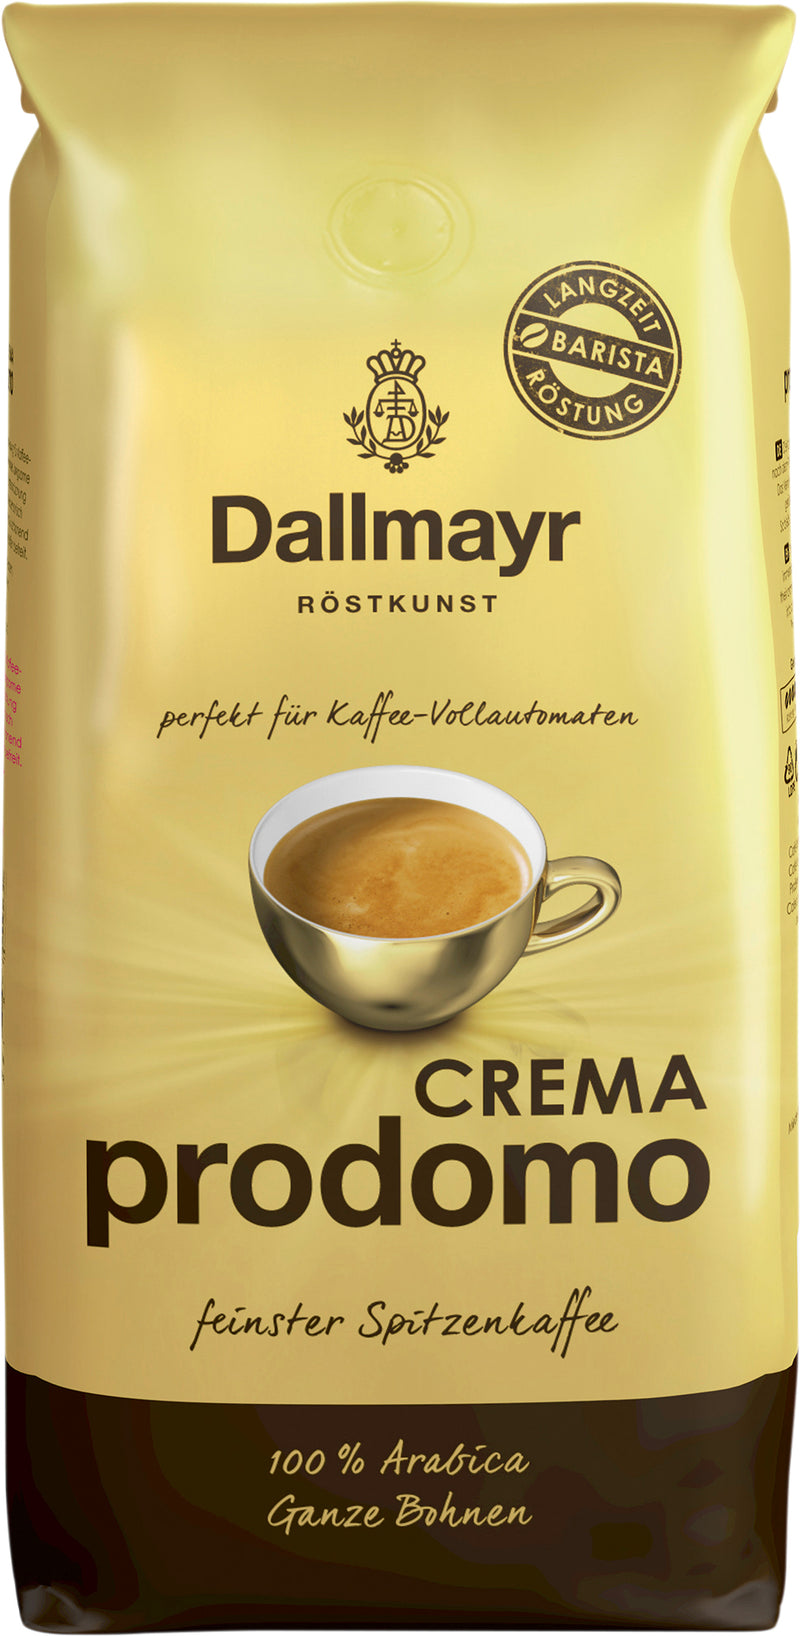 Dallmayr Prodomo Caffee Crema Ganze Bohnen  1000g Spitzenmischung mit ausgeprägter Geschmacksfülle und kraftvollem Körper